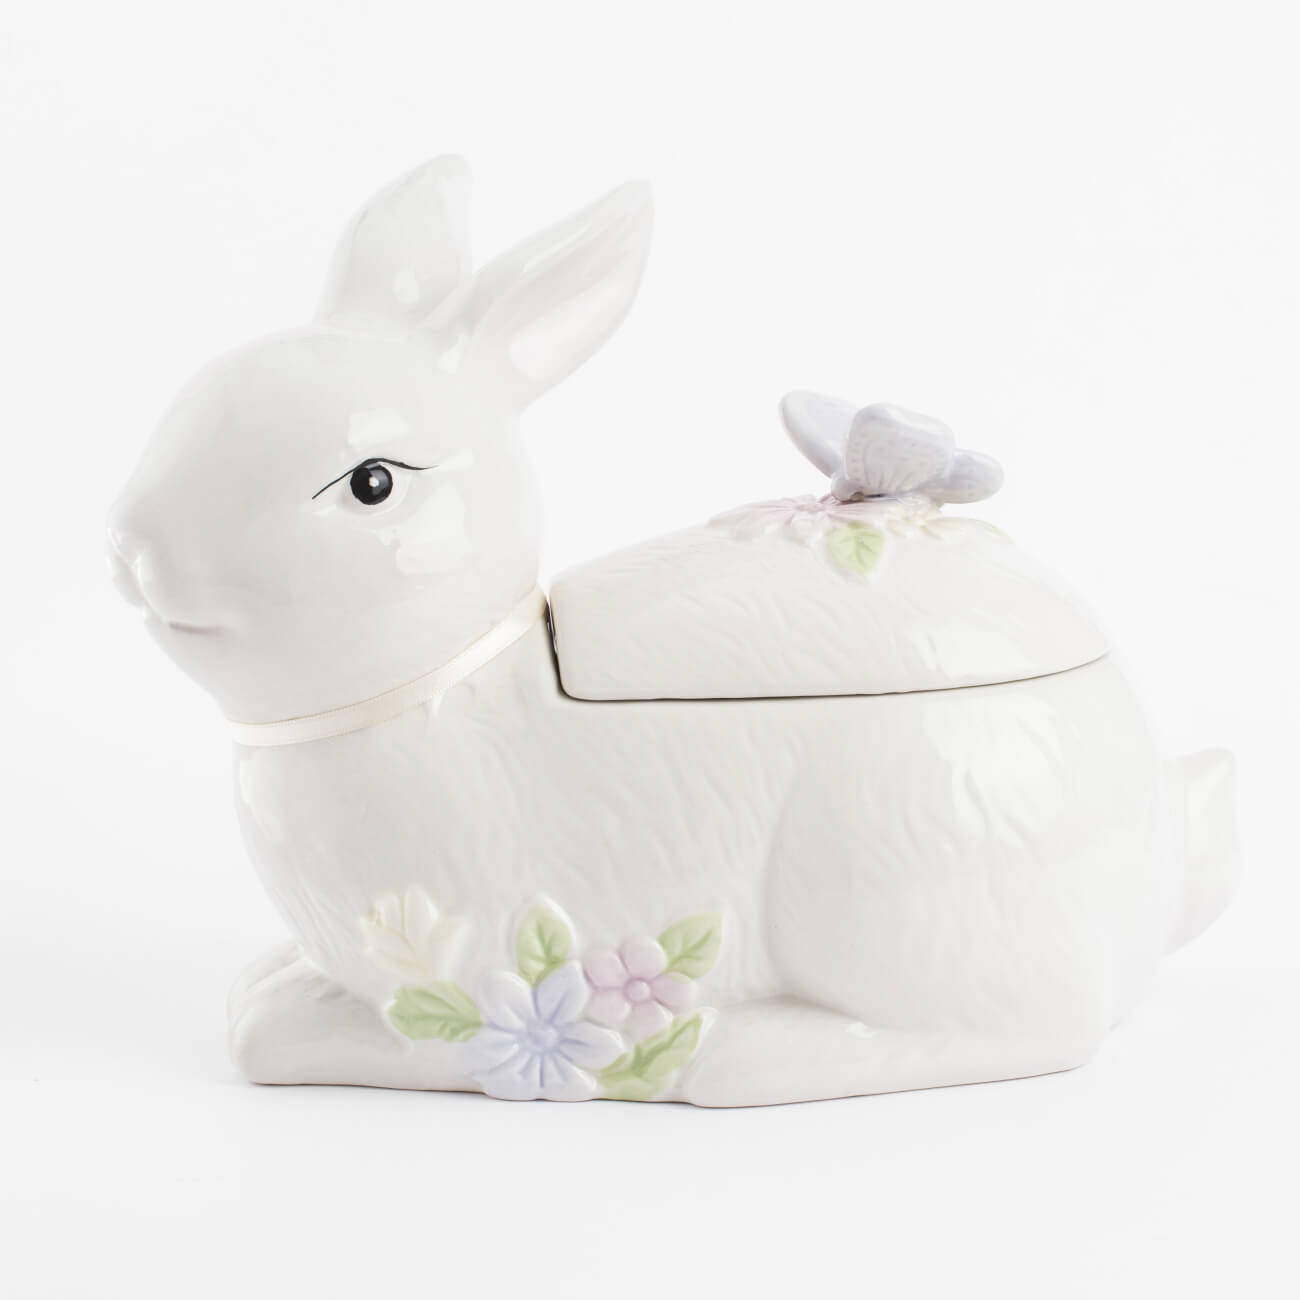 статуэтка с подсветкой 13 см фарфор p белая кролик с ами easter Емкость для хранения, 25х19 см, 1,1 л, керамика, белая, Кролик с бабочкой, Easter